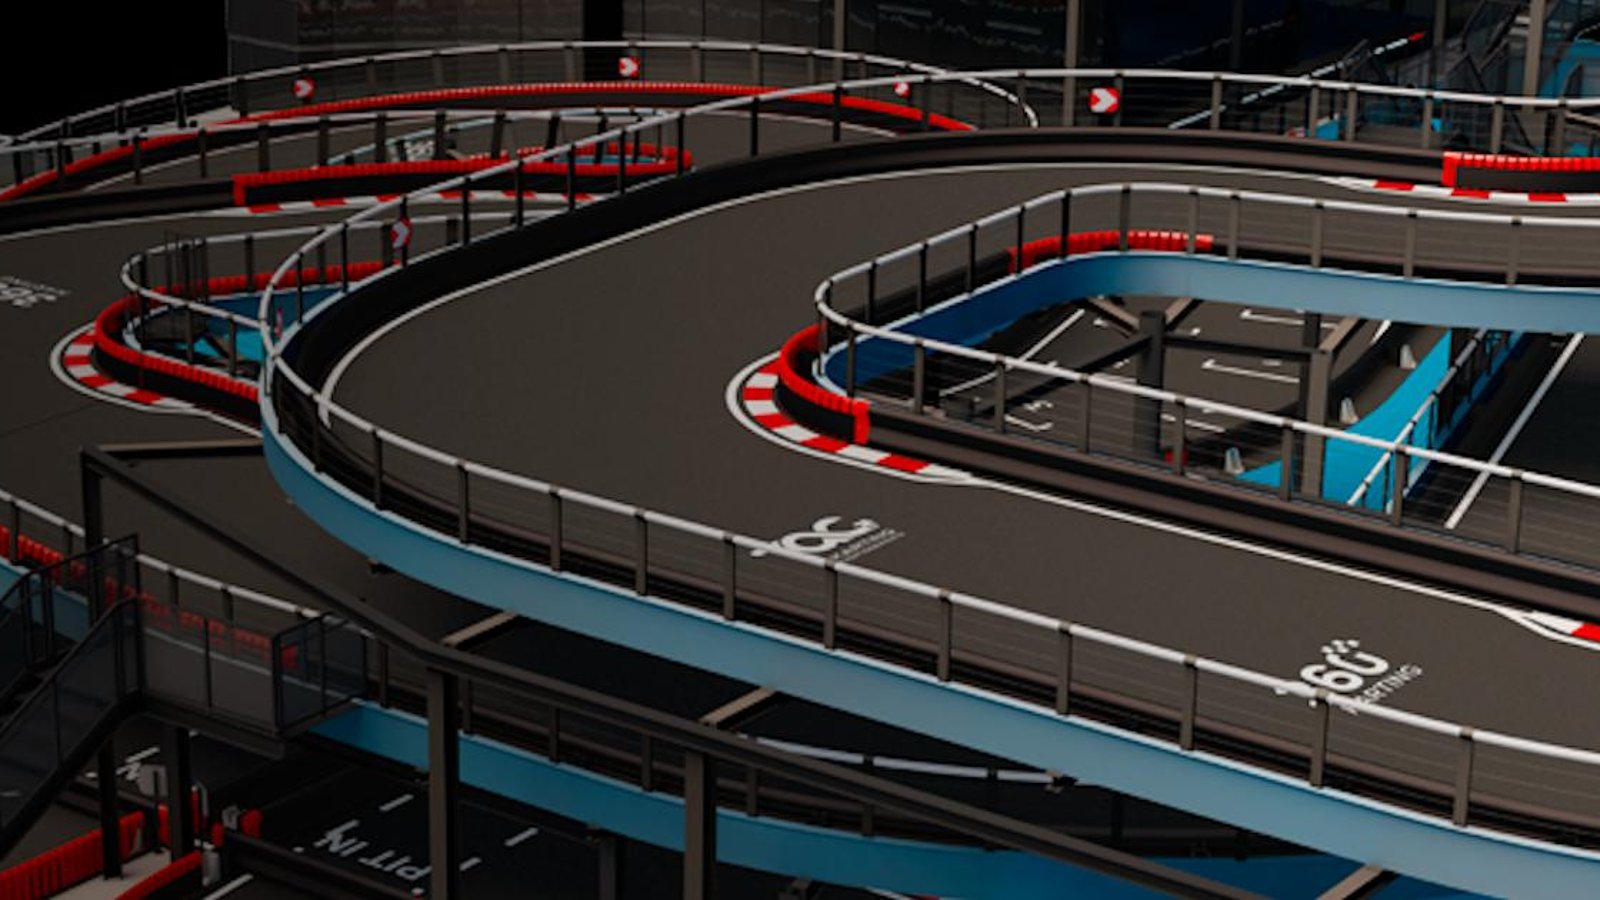 Découvrez le nouveau circuit de karting de grande envergure qui ouvrira ses portes à Ste-Thérèse l’été prochain